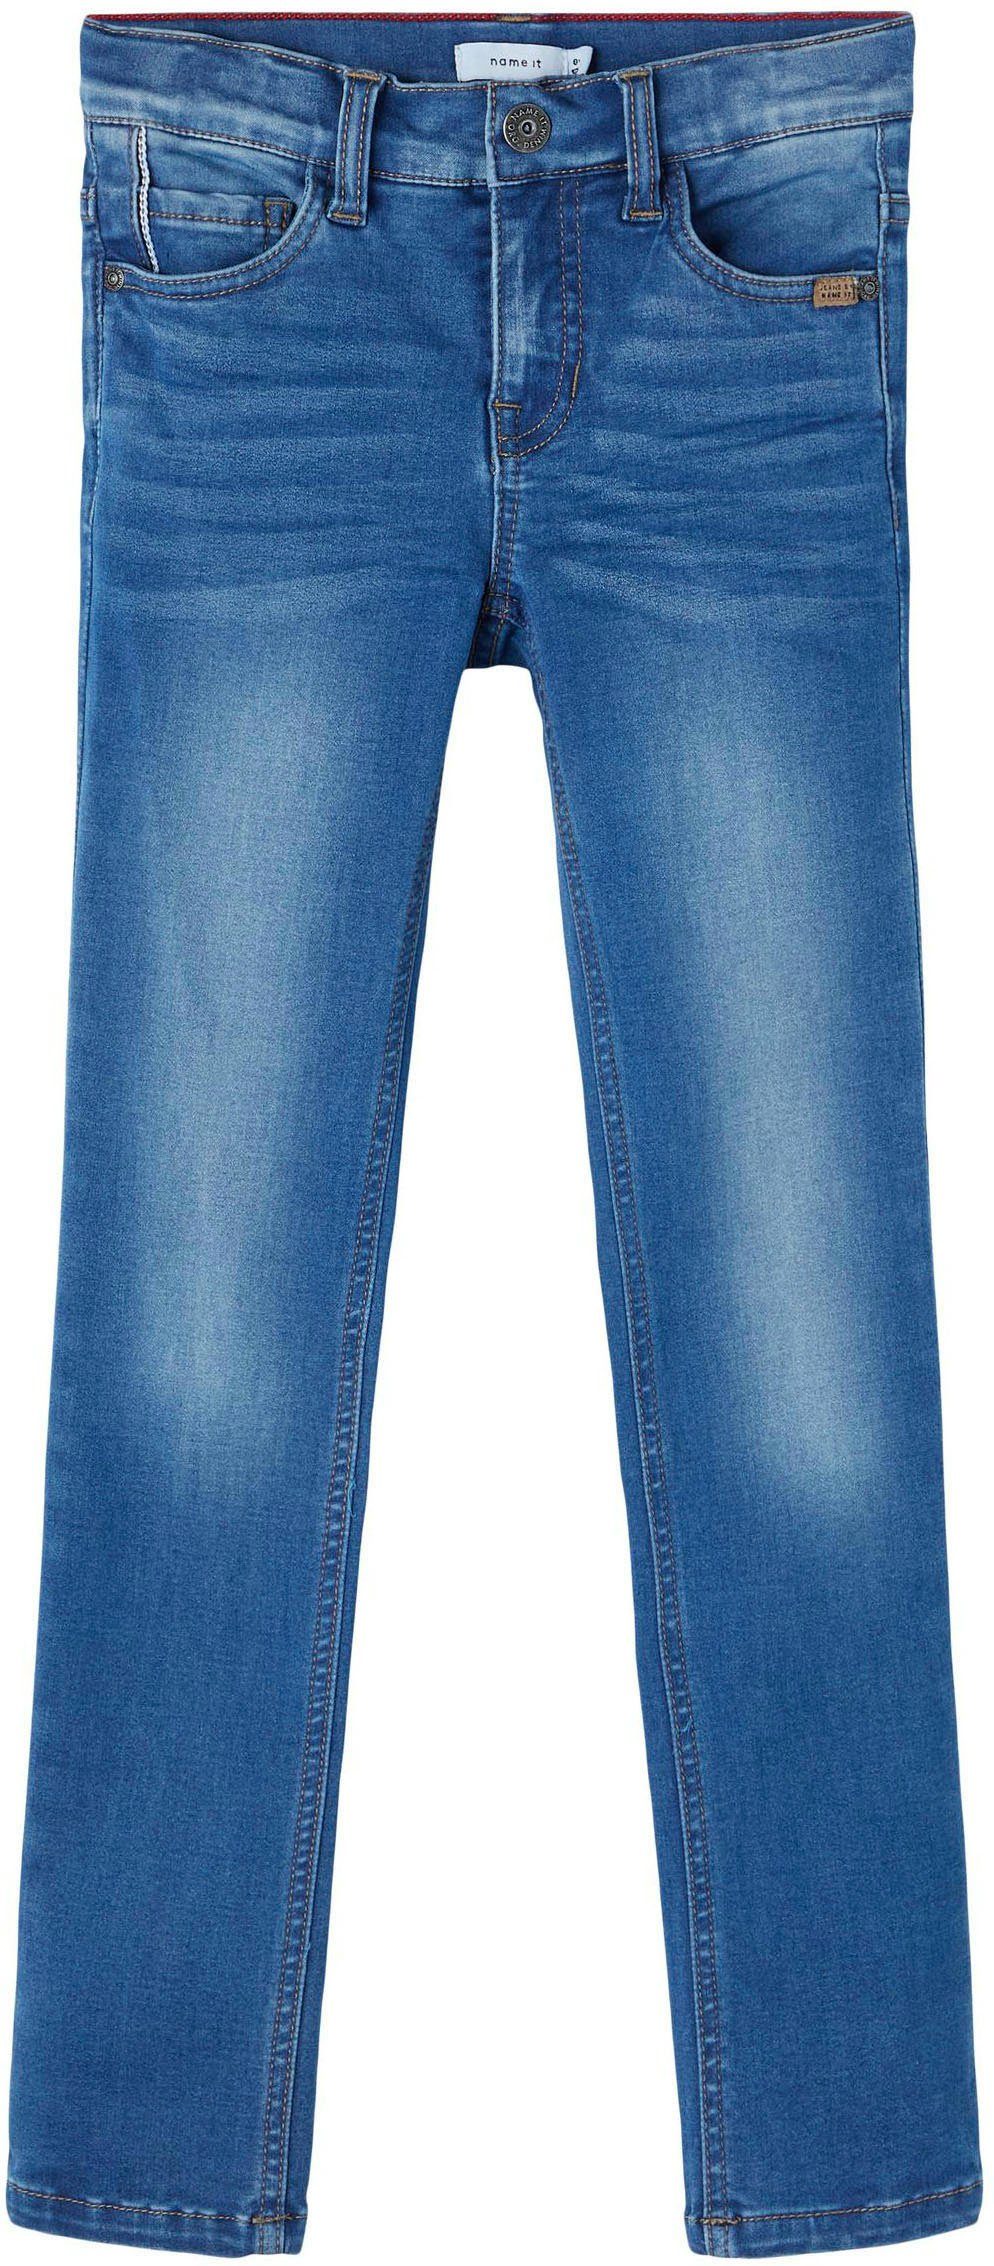 Stretch-Jeans denim blue Name It medium